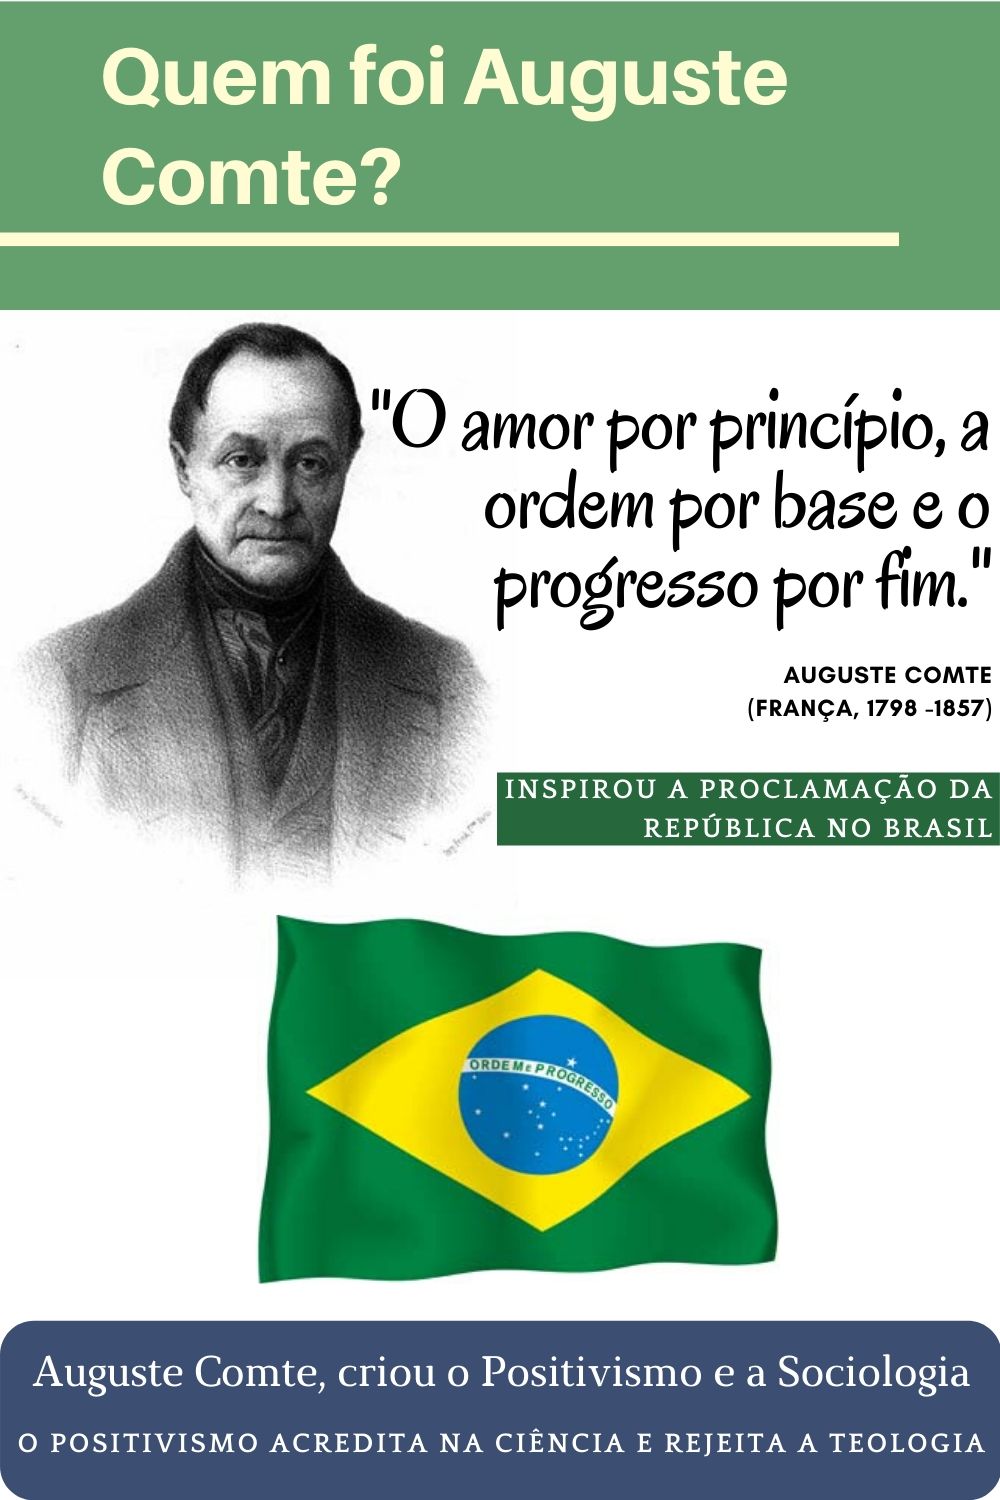 Brasil, uma república positivista